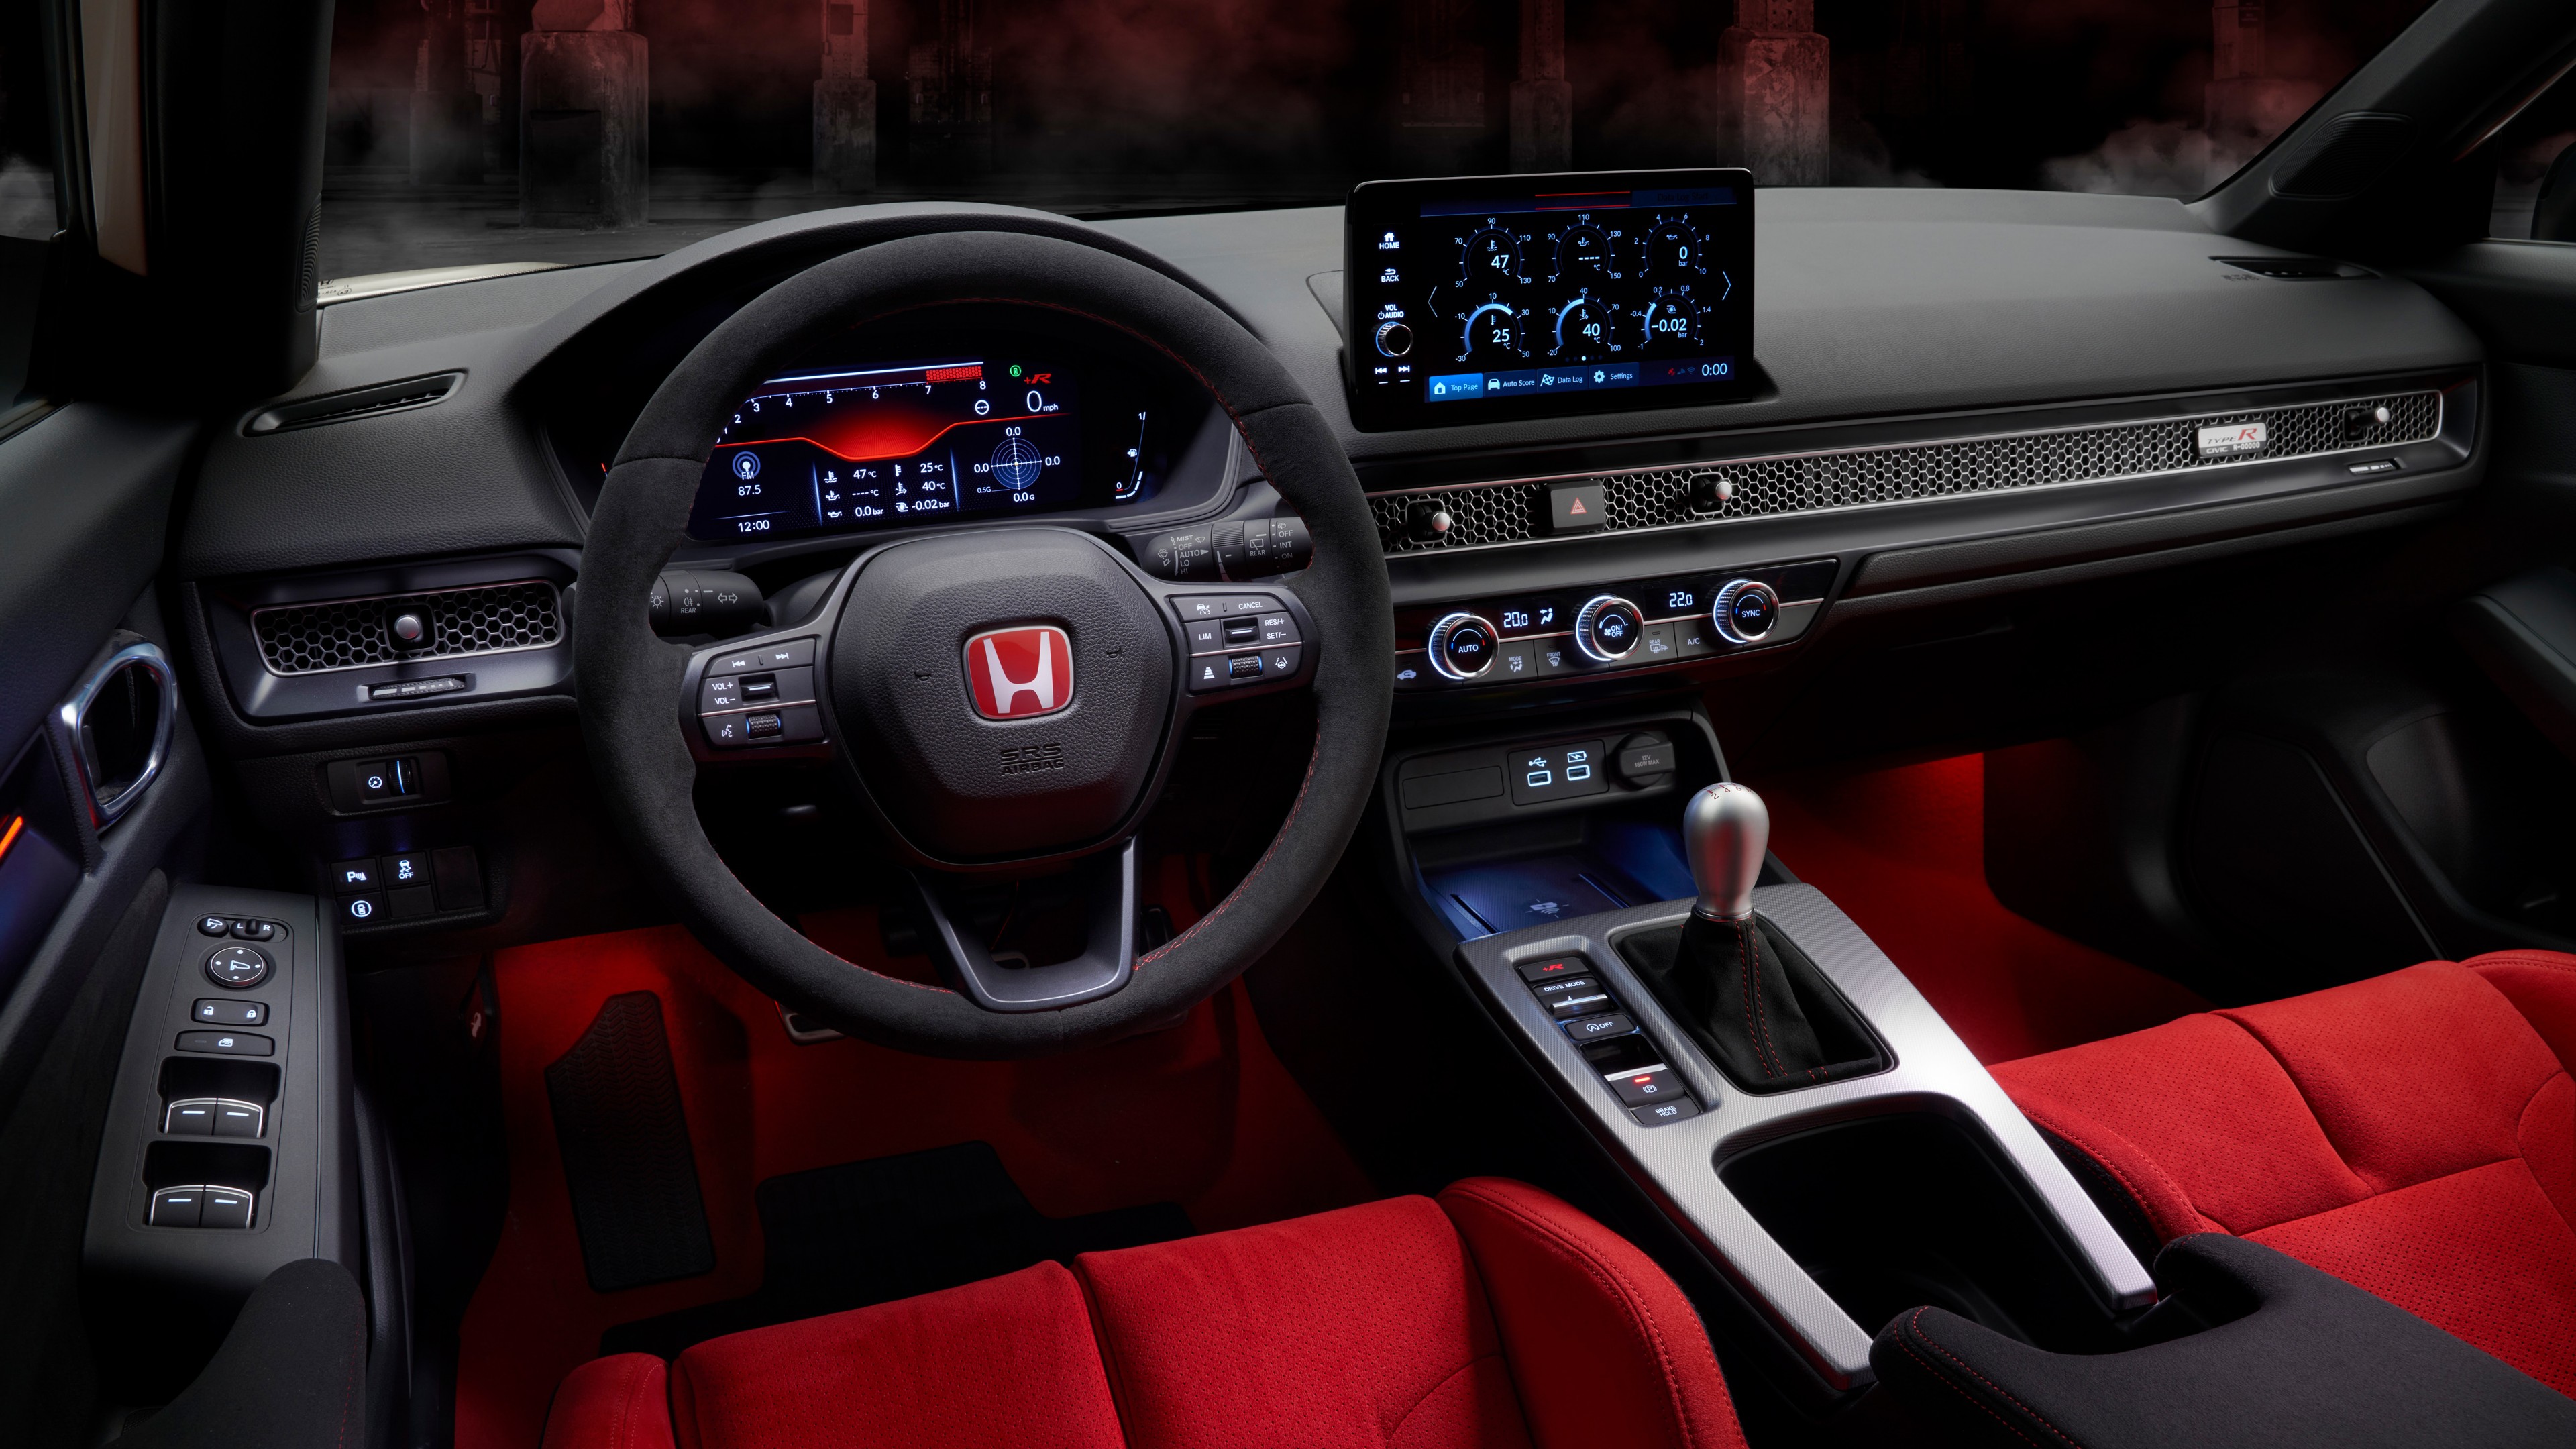 Honda Civic Type R 2022 Interior 5K Wallpaper Car Wallpaper